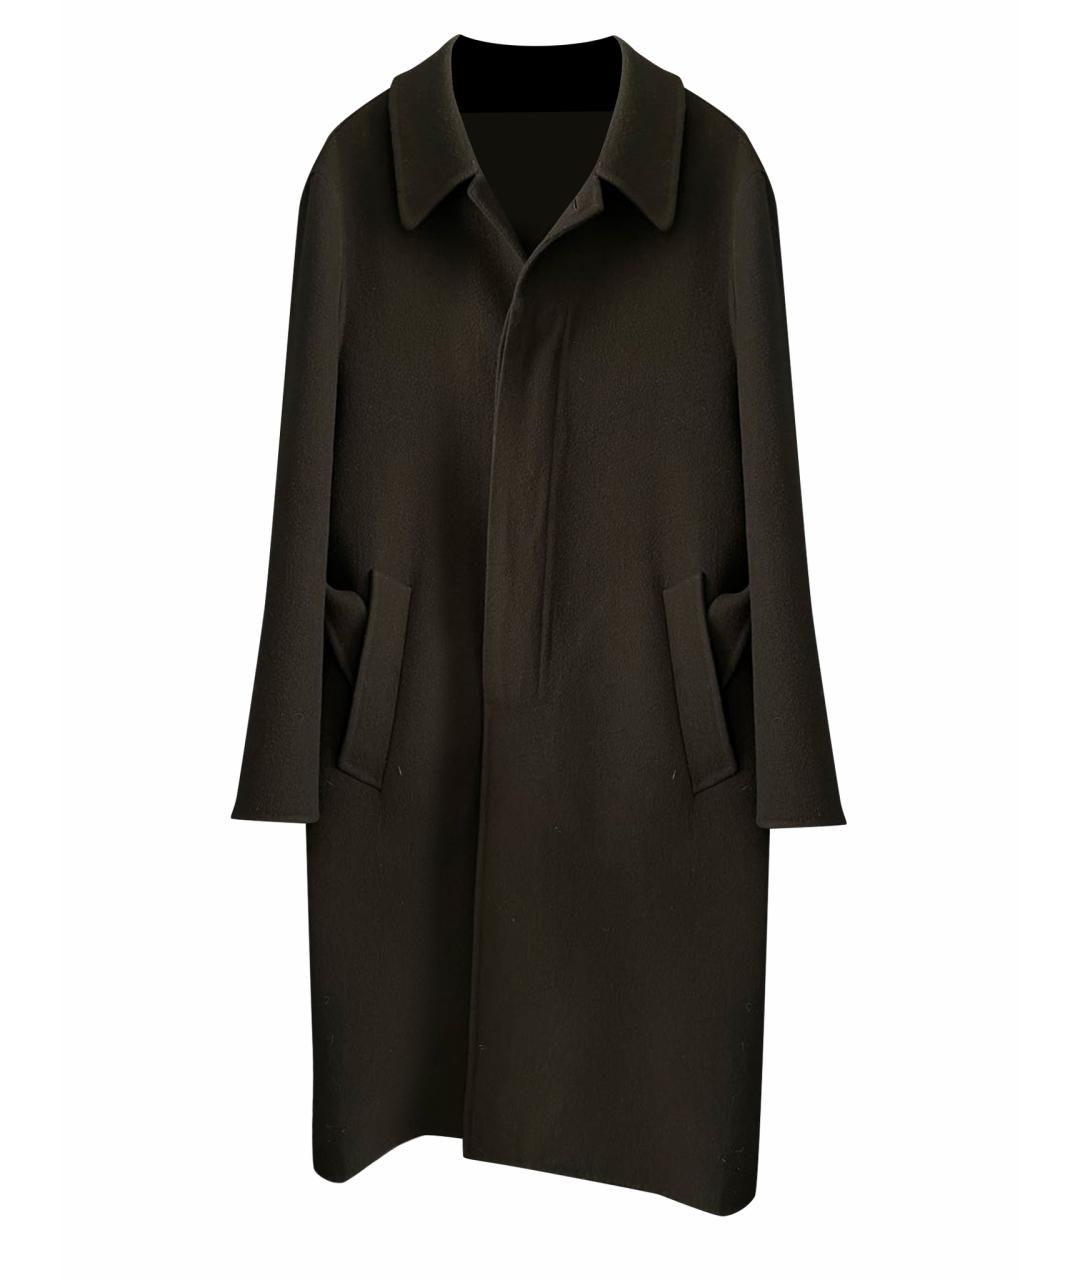 LOEWE Черное кашемировое пальто, фото 1